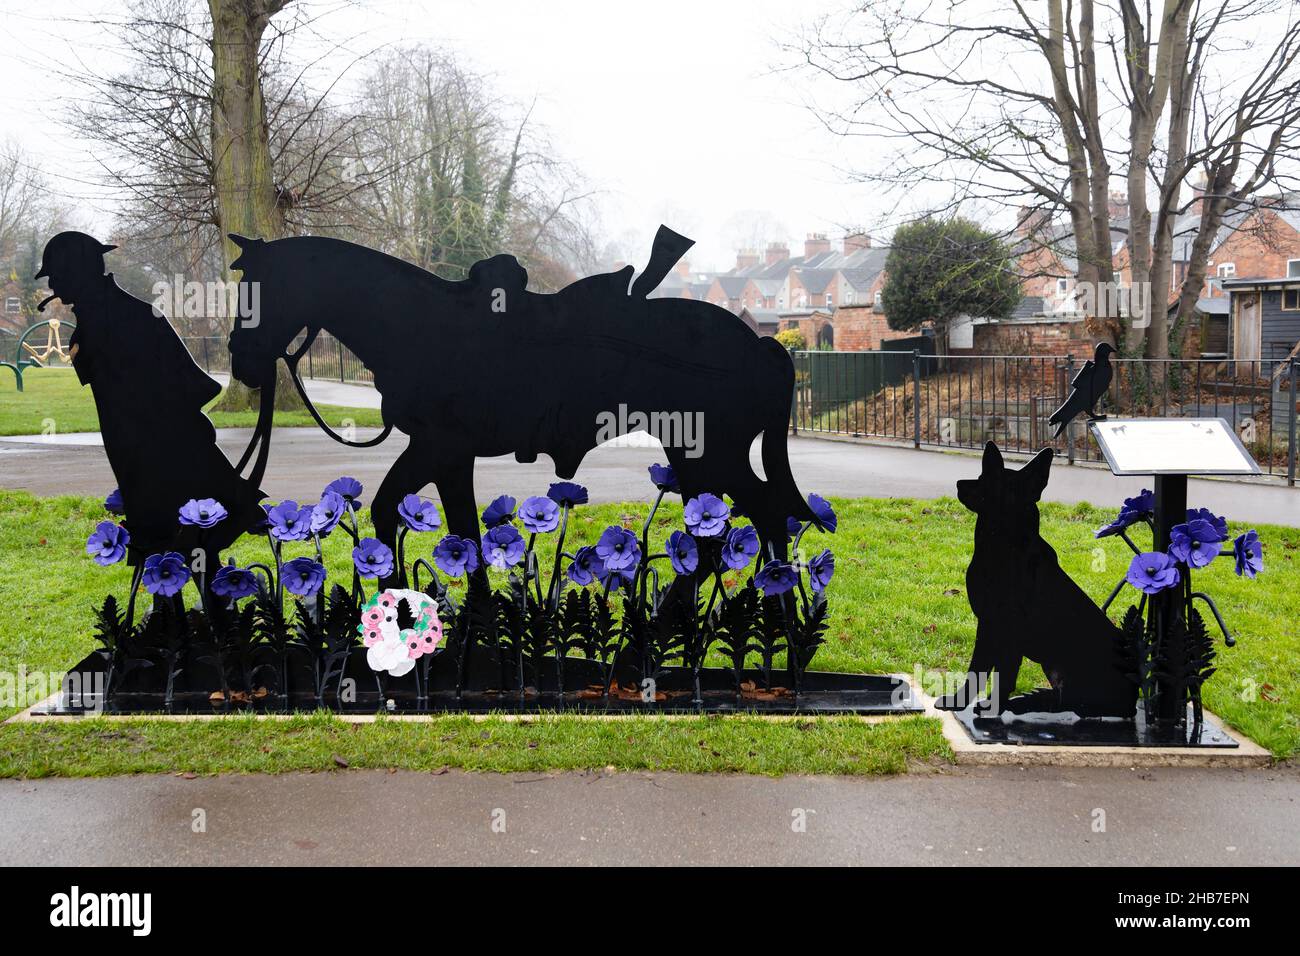 War Horse, Silhouette Memorial aux animaux tués dans le service de guerre.Coquelicots violets.Wyndham Park, Grantham, Lincolnshire, Angleterre. Banque D'Images